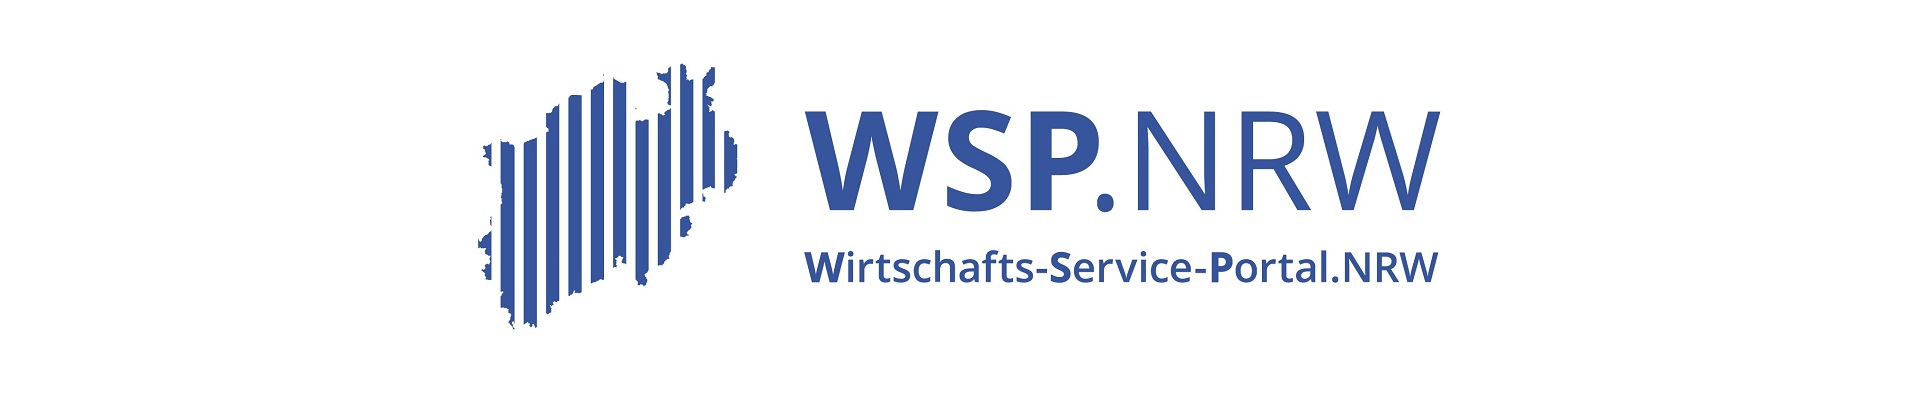 Logo mit Schriftzug Wirtschafts-Service-Portal.NRW